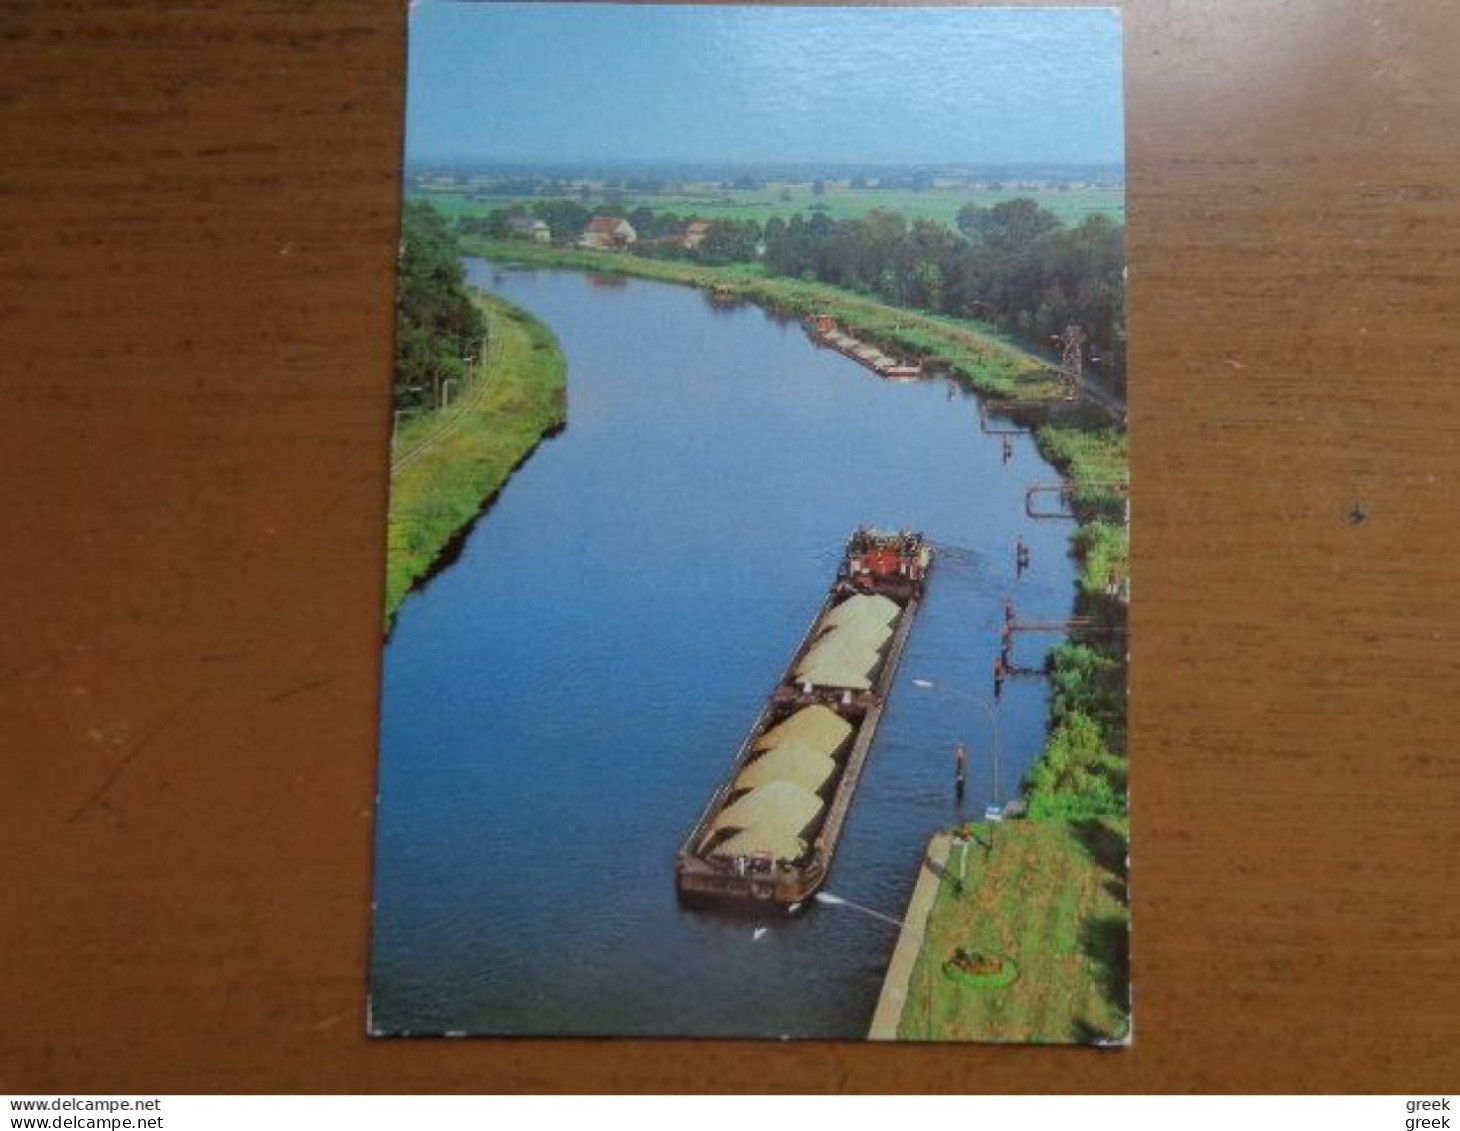 Doos postkaarten (3kg363) Allerlei landen en thema's, zie enkele foto's